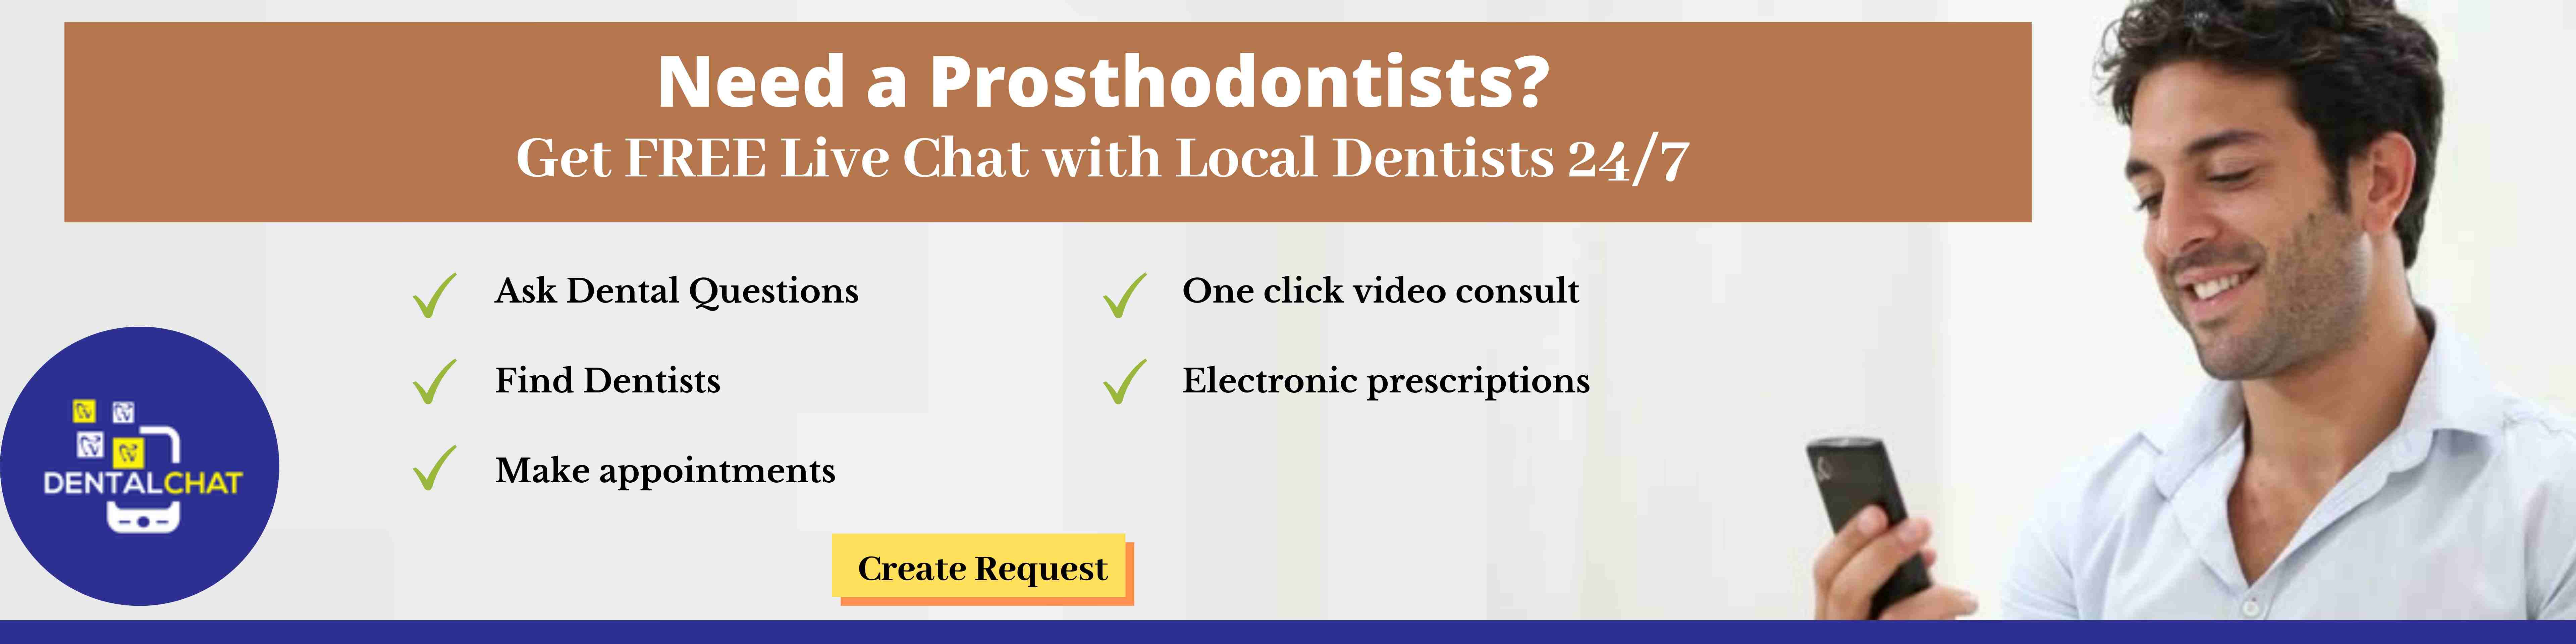 Online Prosthodontics Blog, Local Prosthodontist Chat, Best Prosthodontists Blogging